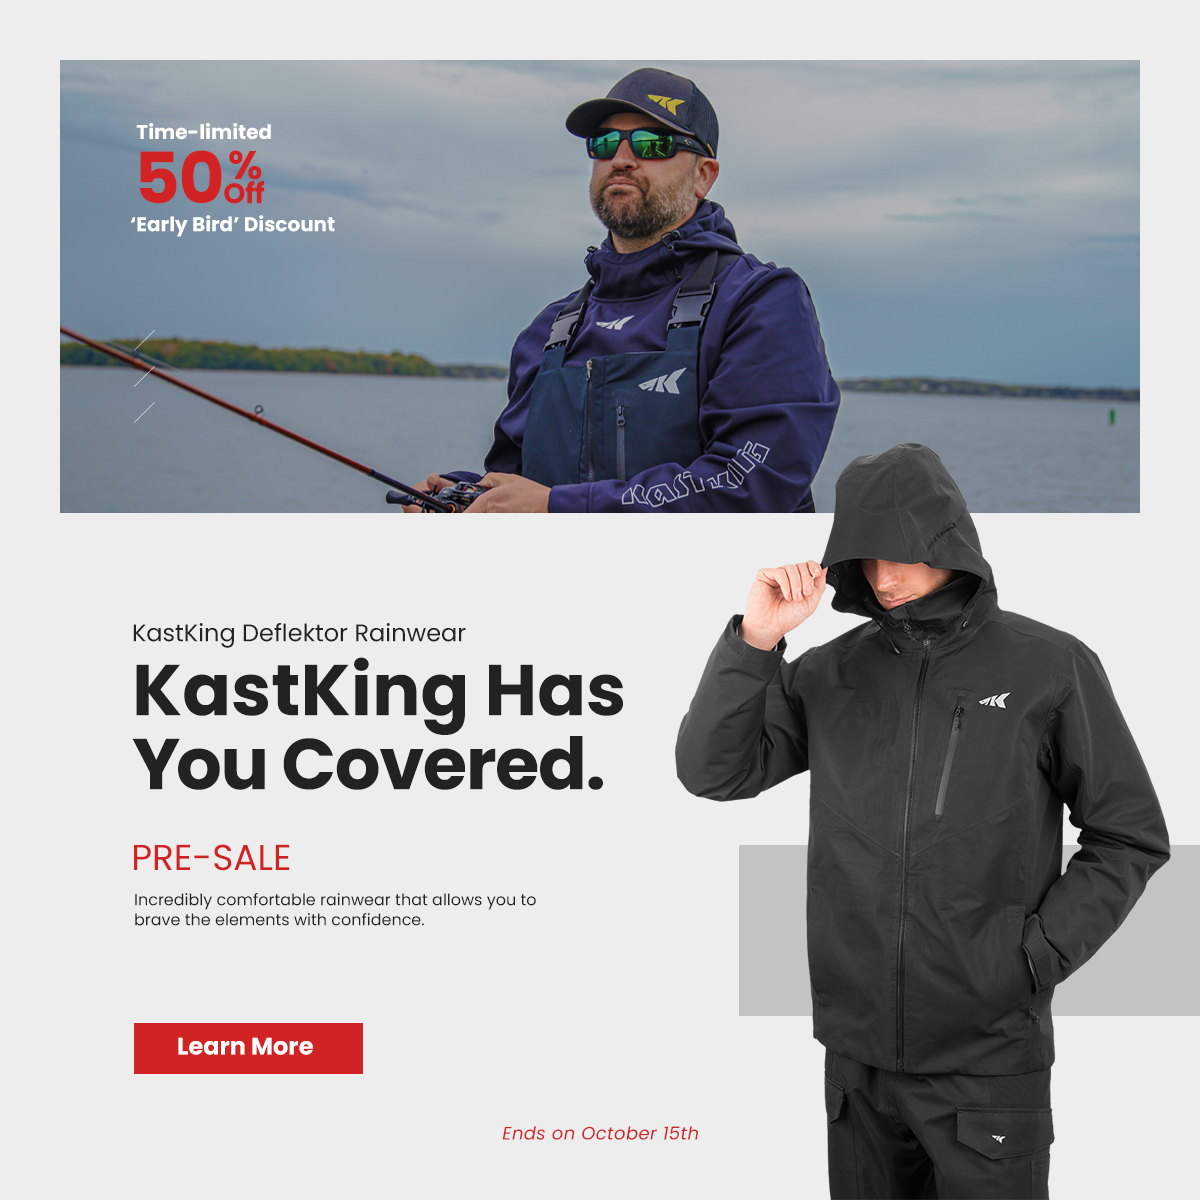 Introducing: Deflektor Rainwear by KastKing - KastKing